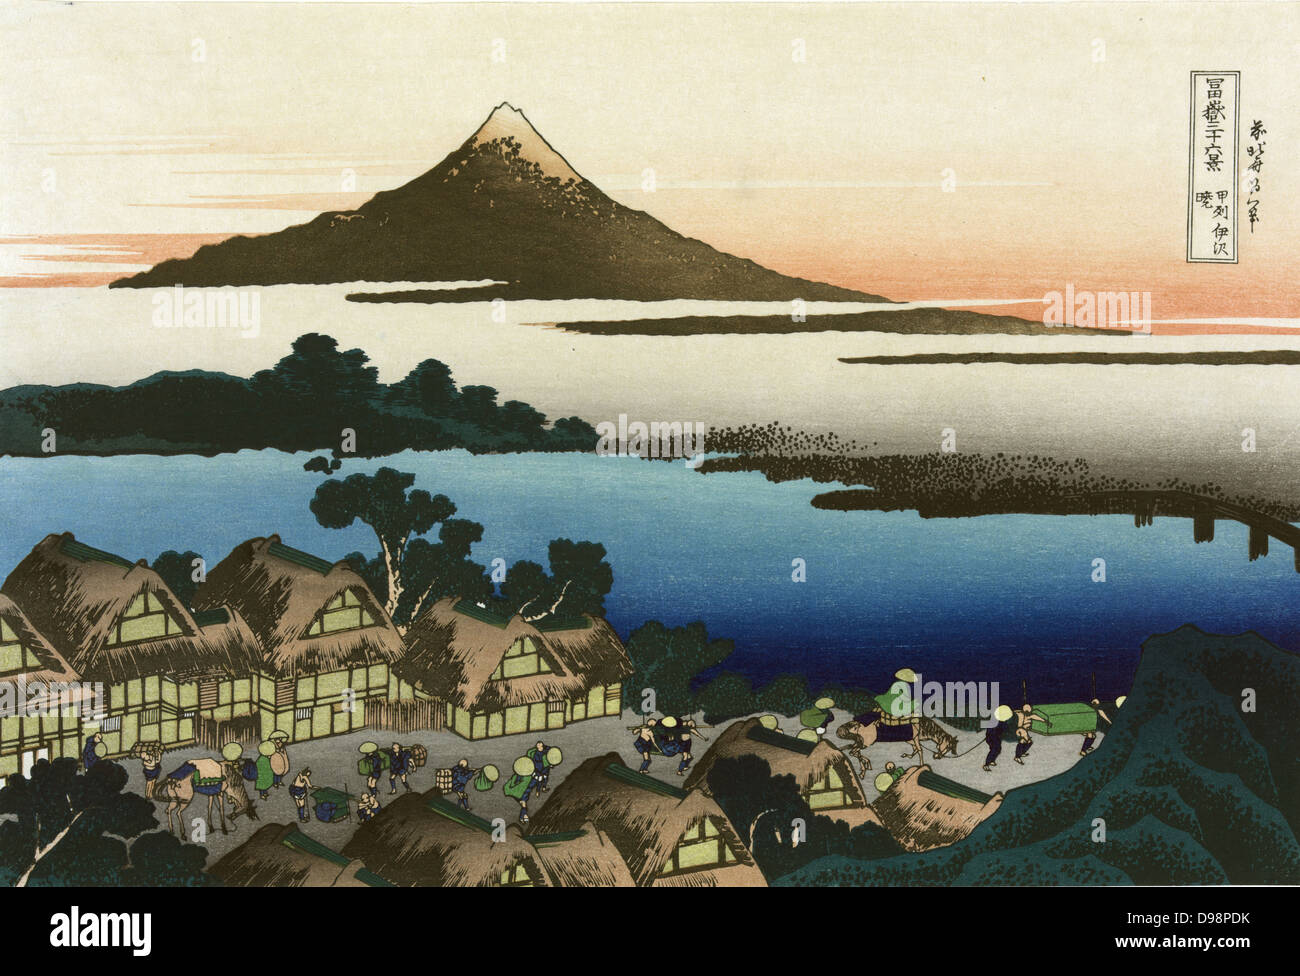 L'aube à Isawa dans la province Kai : c1833. À partir de 'trente-six vues du Mont Fuji", c1831. L'une des 10 images supplémentaires. Katsushika Hokusai (1760-1849) artiste japonais Ukiyo-e. Chaume Bâtiments Transports par route piétonne cheval Banque D'Images